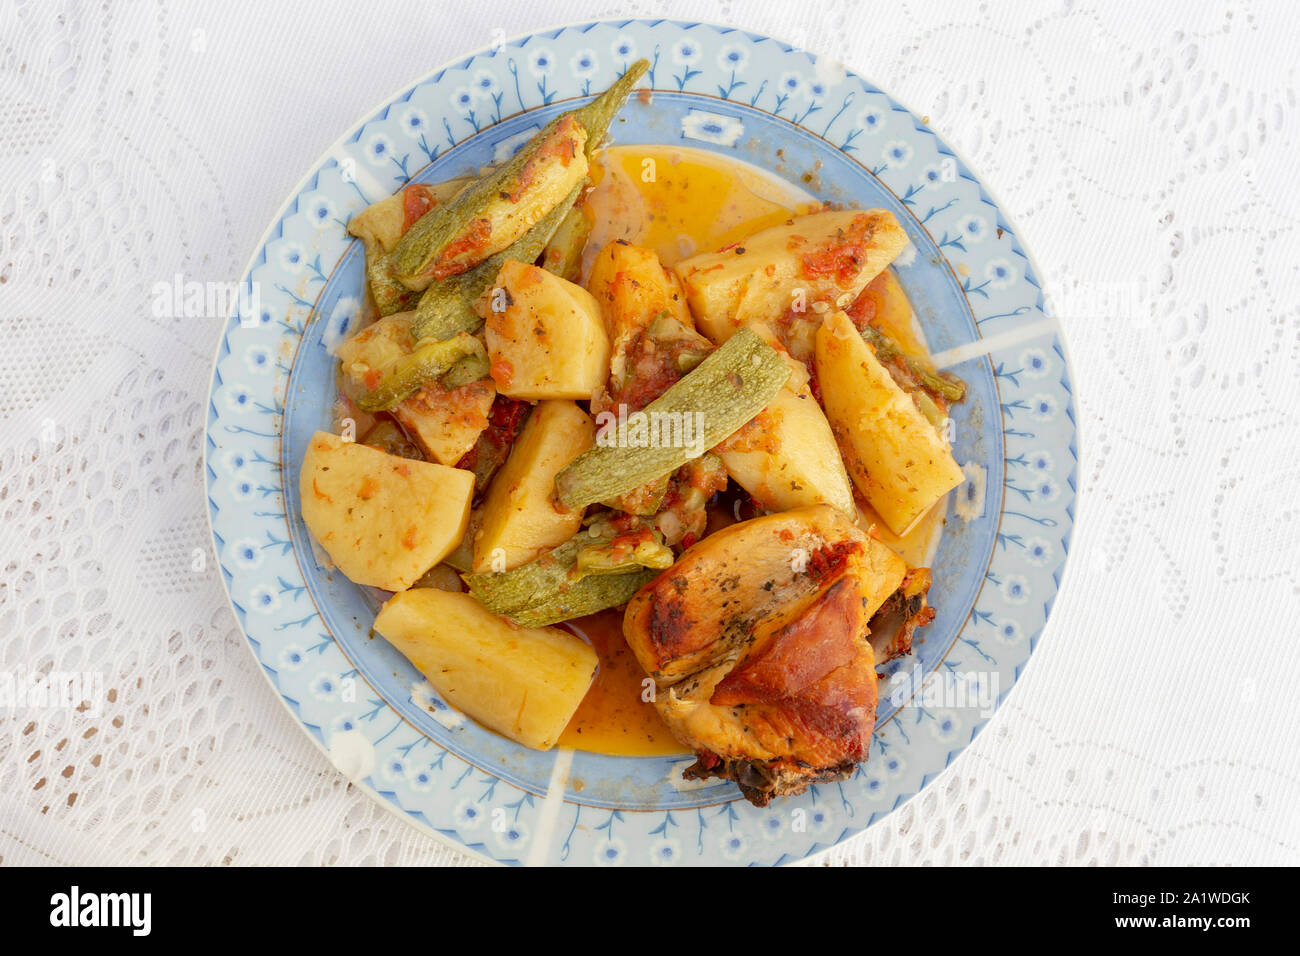 Une authentique Assiette de poulet au four crétois avec des pommes de terre et courgettes (zuccini) dans une riche sauce tomate et sauce d'huile d'olive aux herbes Banque D'Images